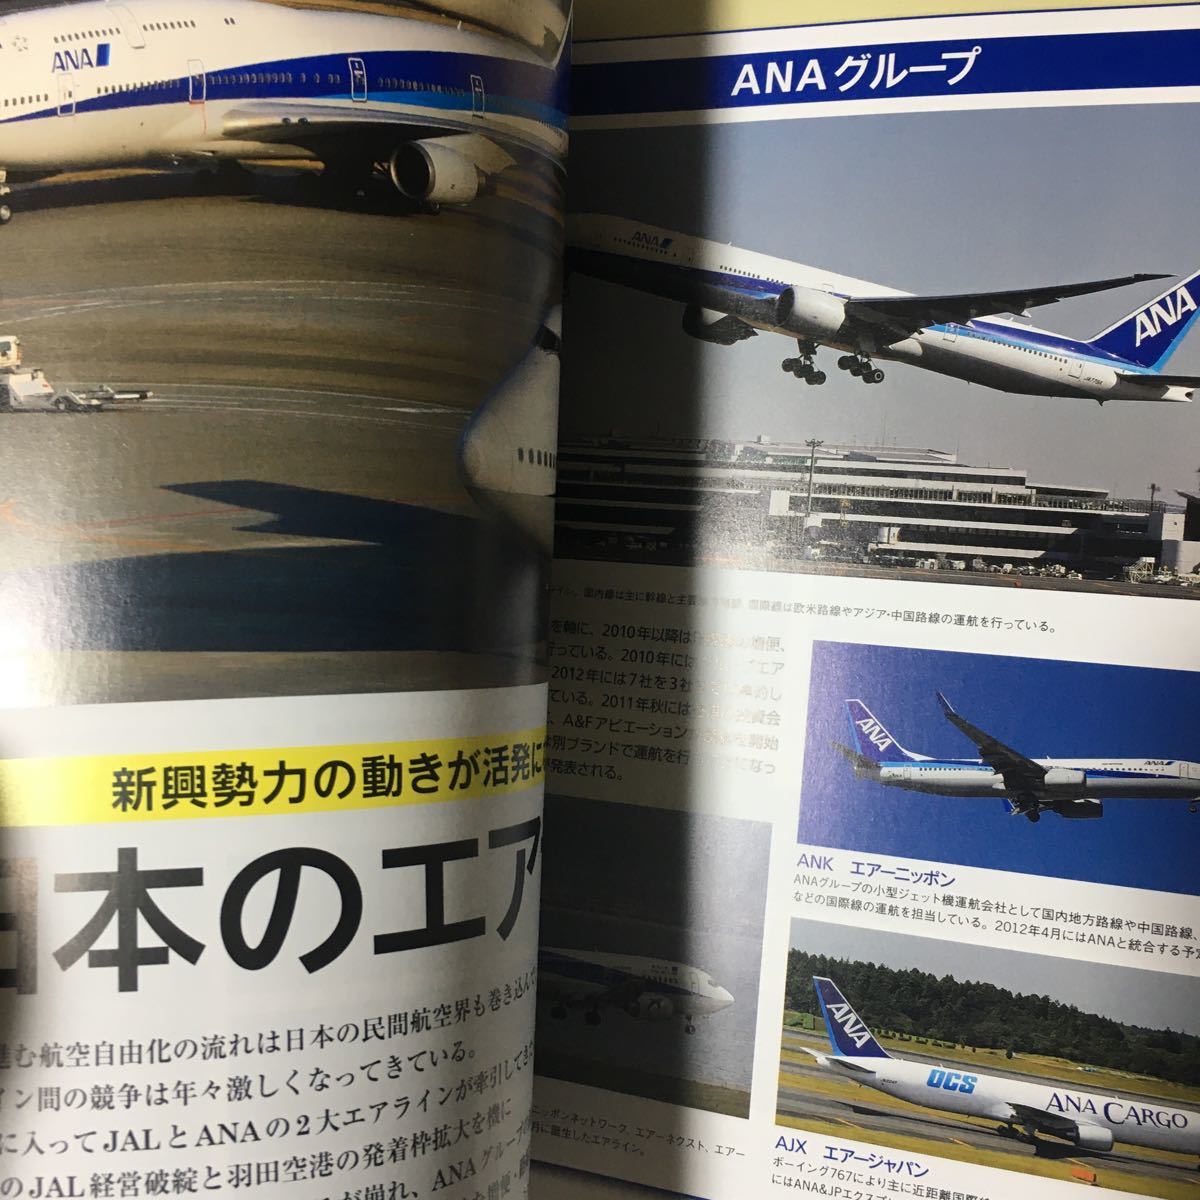 ☆本飛行機「エアライン年鑑2011-2012」航空機JALANALCC空港_画像5